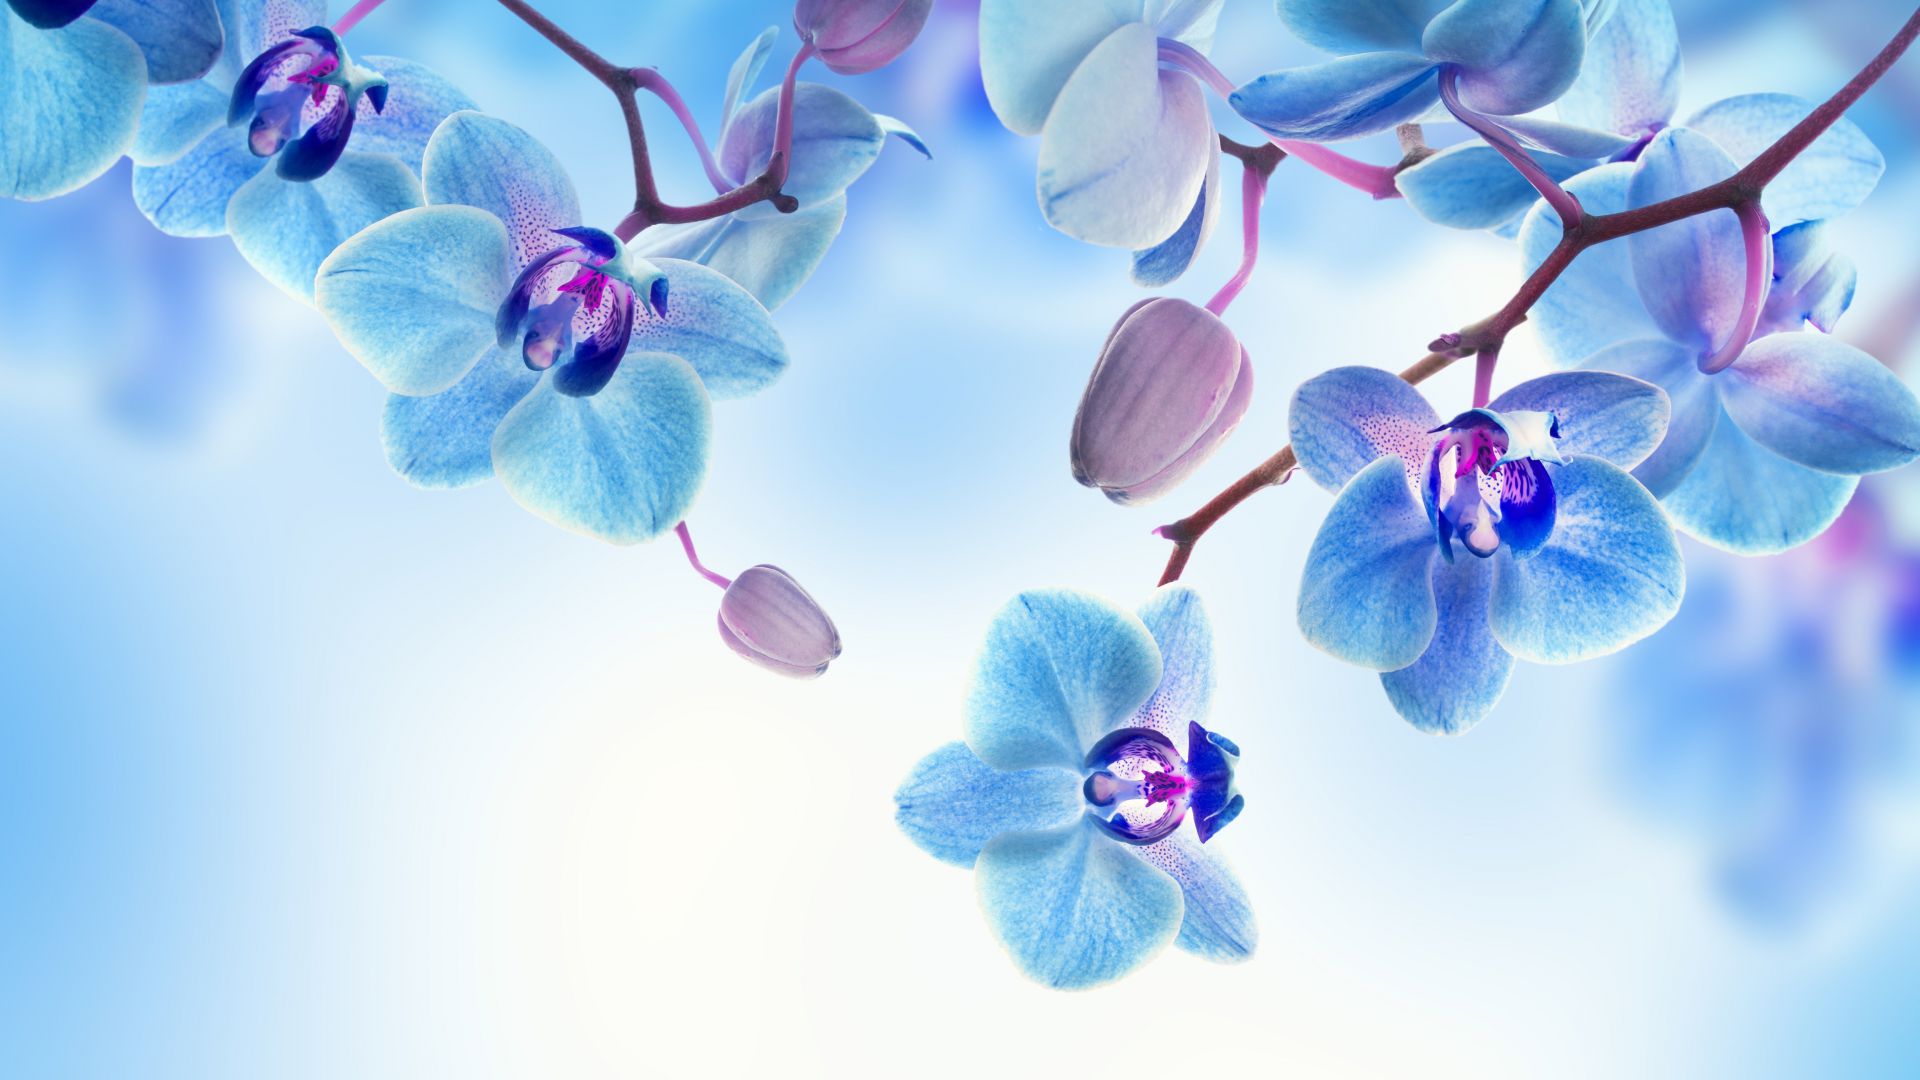 Orchid, 5k, 4k wallpaper, flowers, blue, white (horizontal)